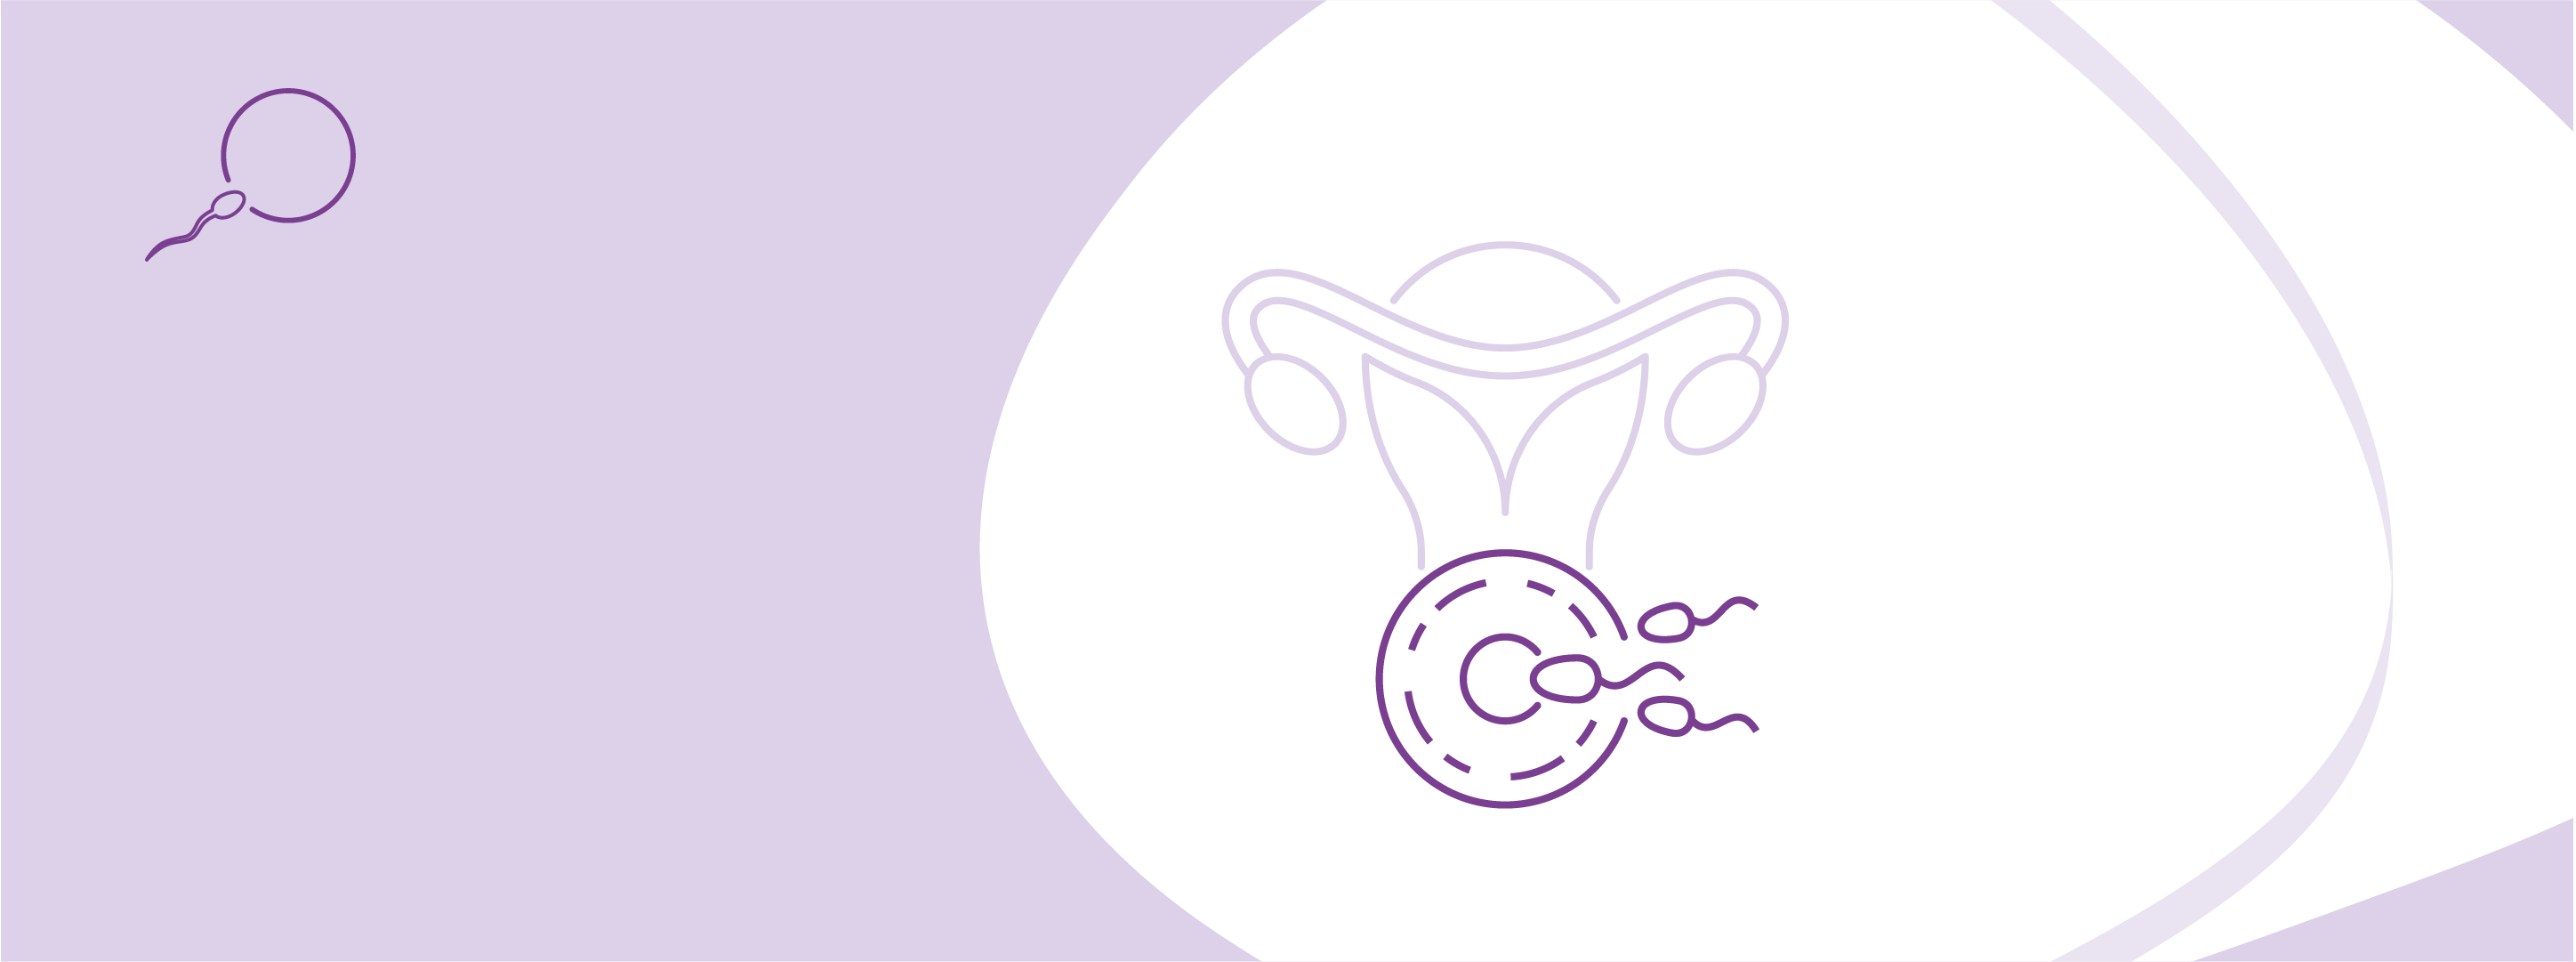 Програма ЕКЗ з донорськими яйцеклітинами (власний донор, родич) та переносом ембріонів (без вартості медикаментів)